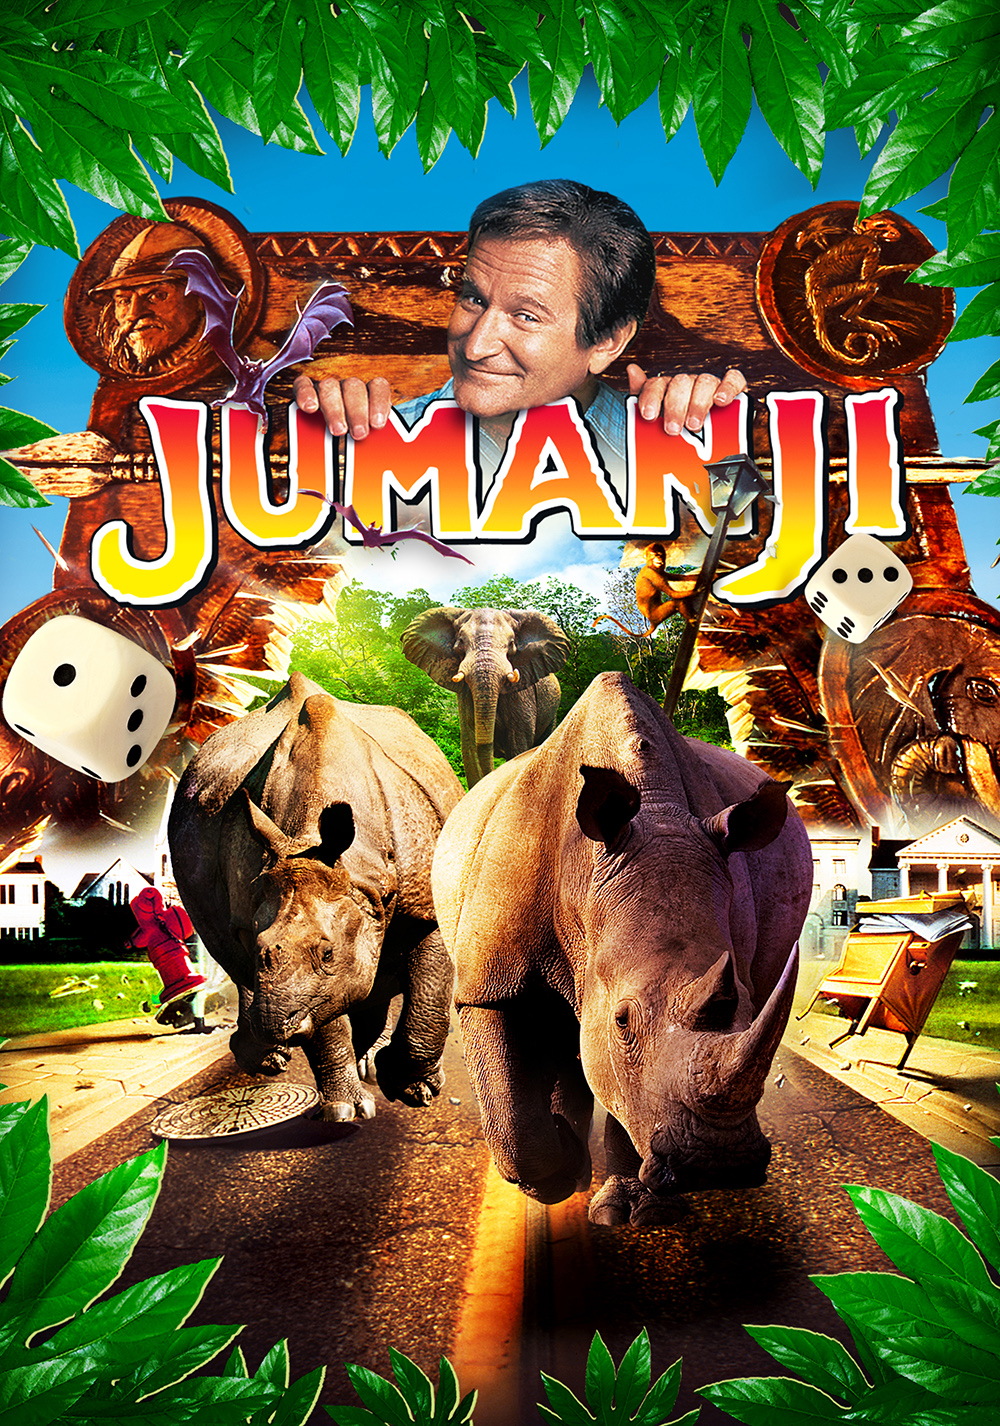 Stiahni si HD Filmy Jumanji (1995)(CZ/EN)[1080p] = CSFD 72%